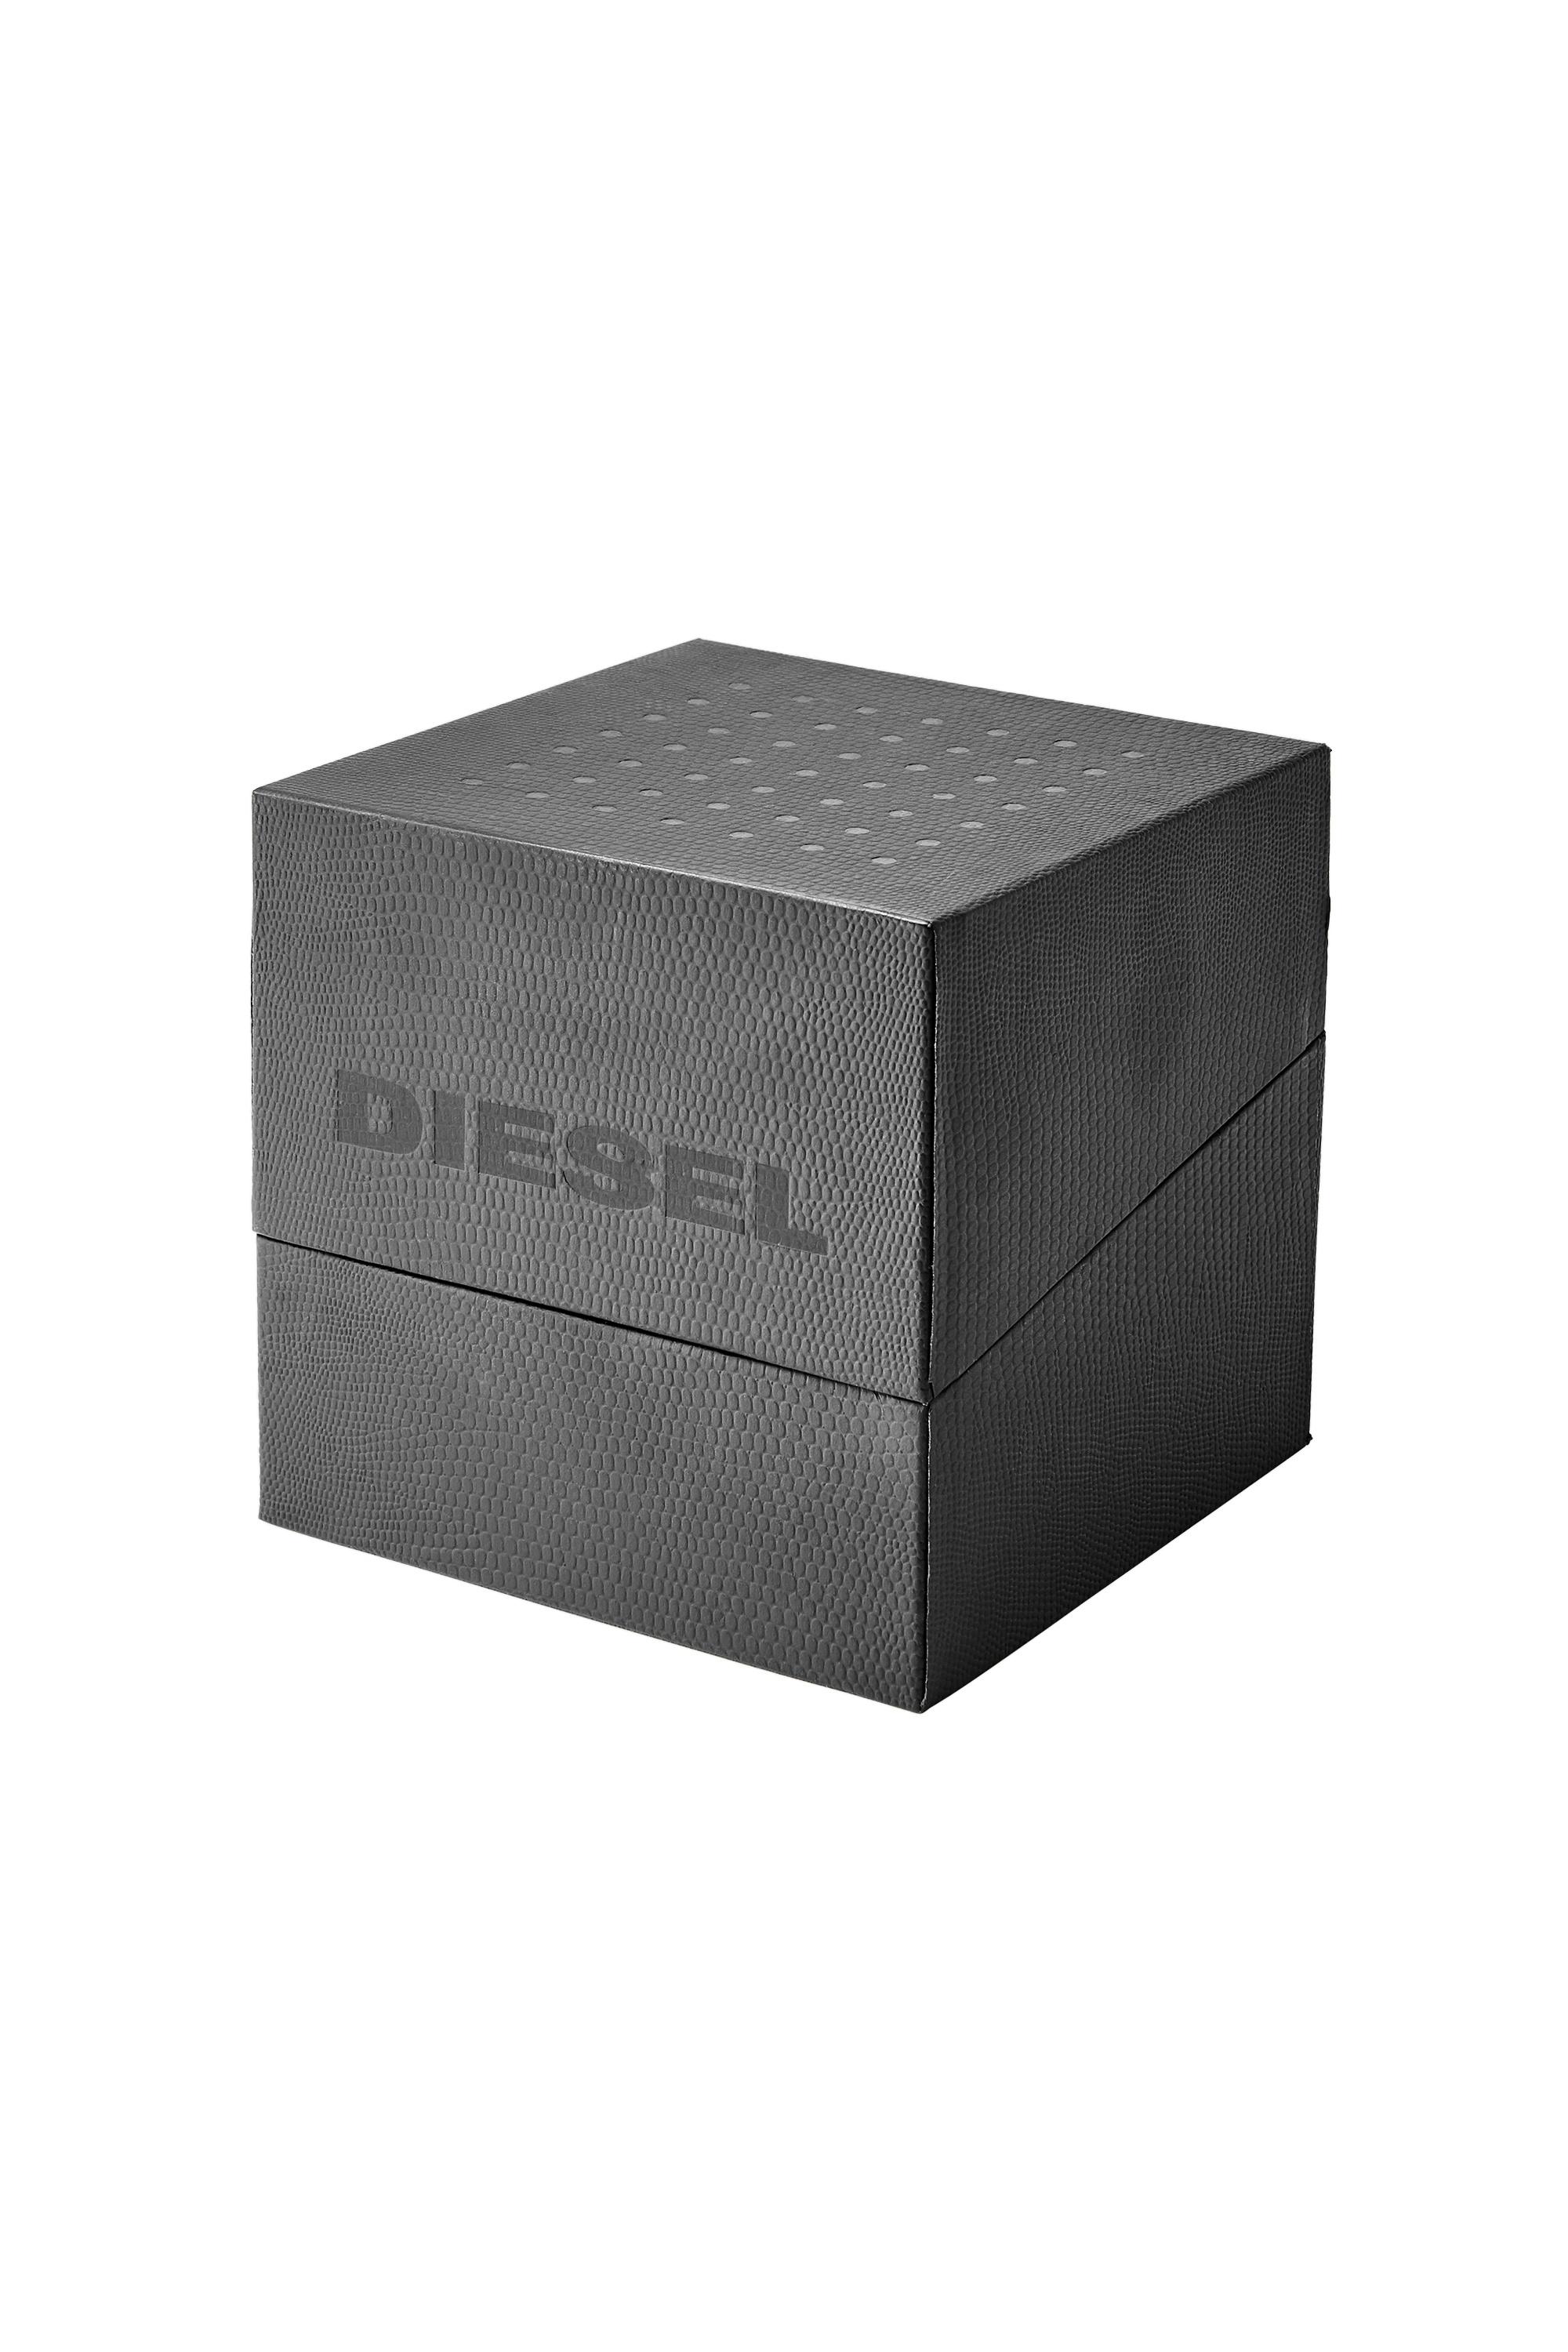 Diesel - DZ7430, Rosso - Image 4